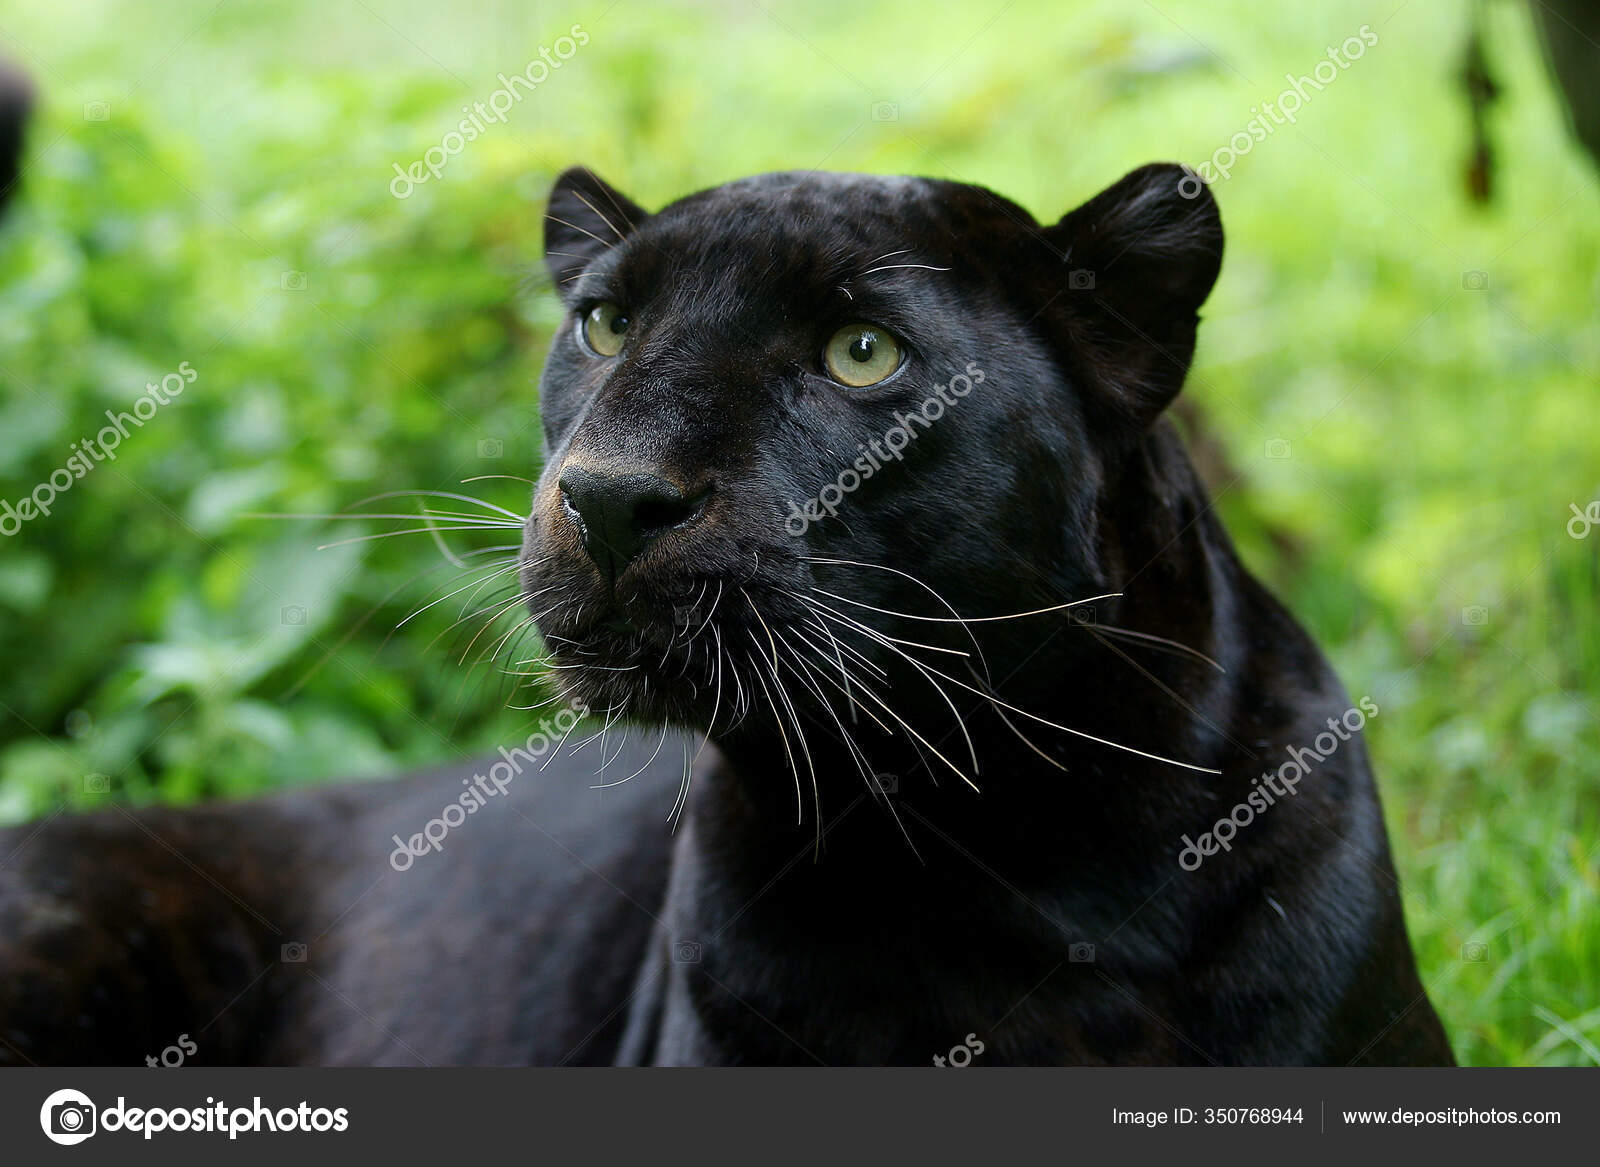 Black panther animal Stock Photos, Royalty Free Black panther animal Images  | Depositphotos